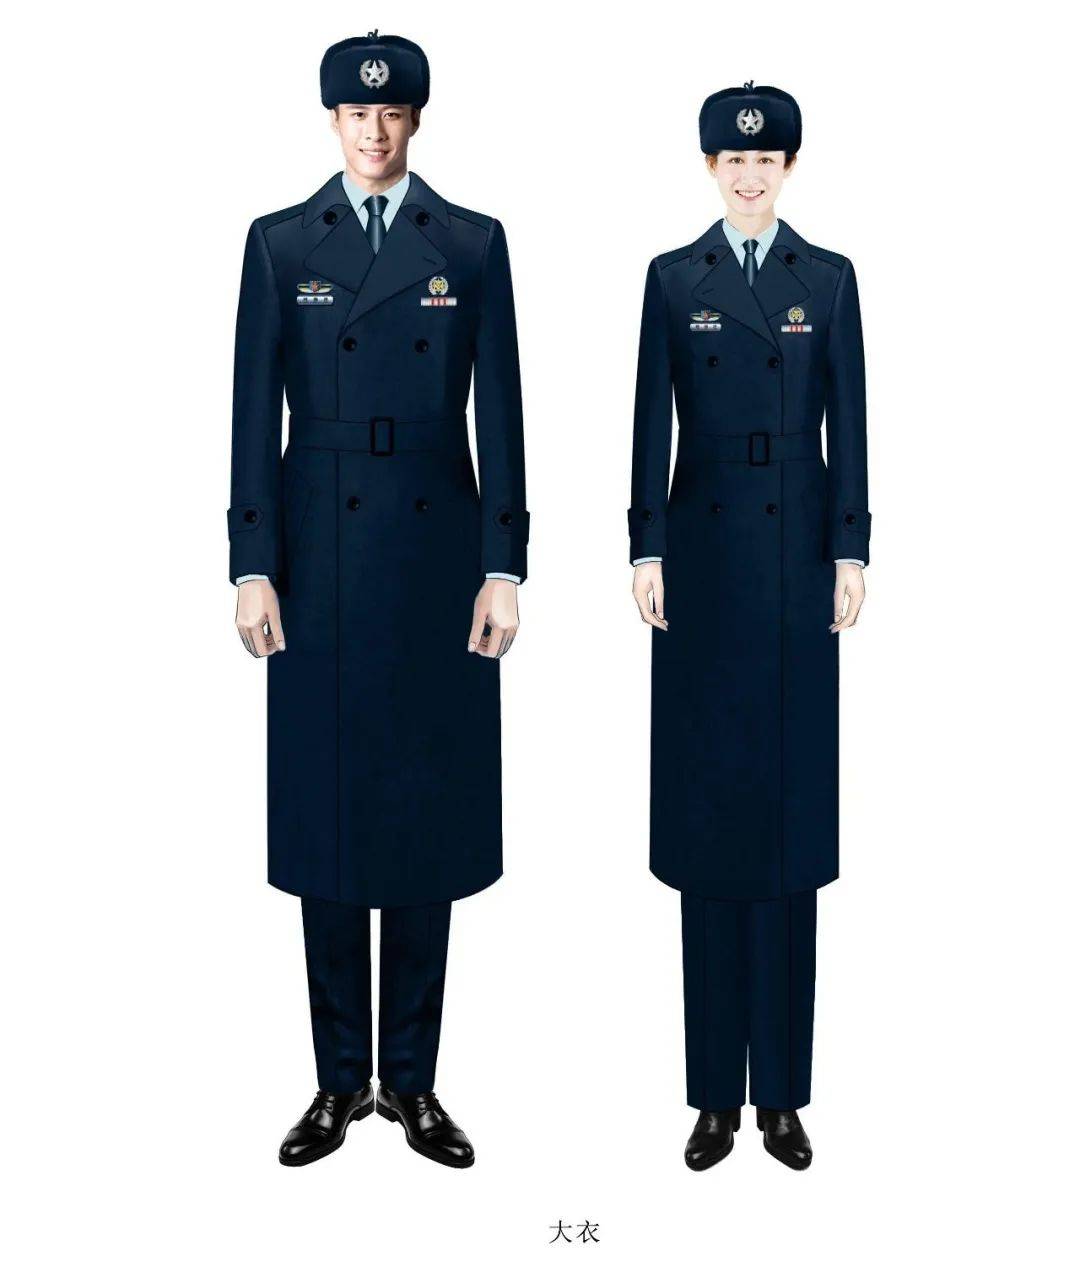 新时代军队文职人员制服和标志最炫孔雀蓝你想拥有吗